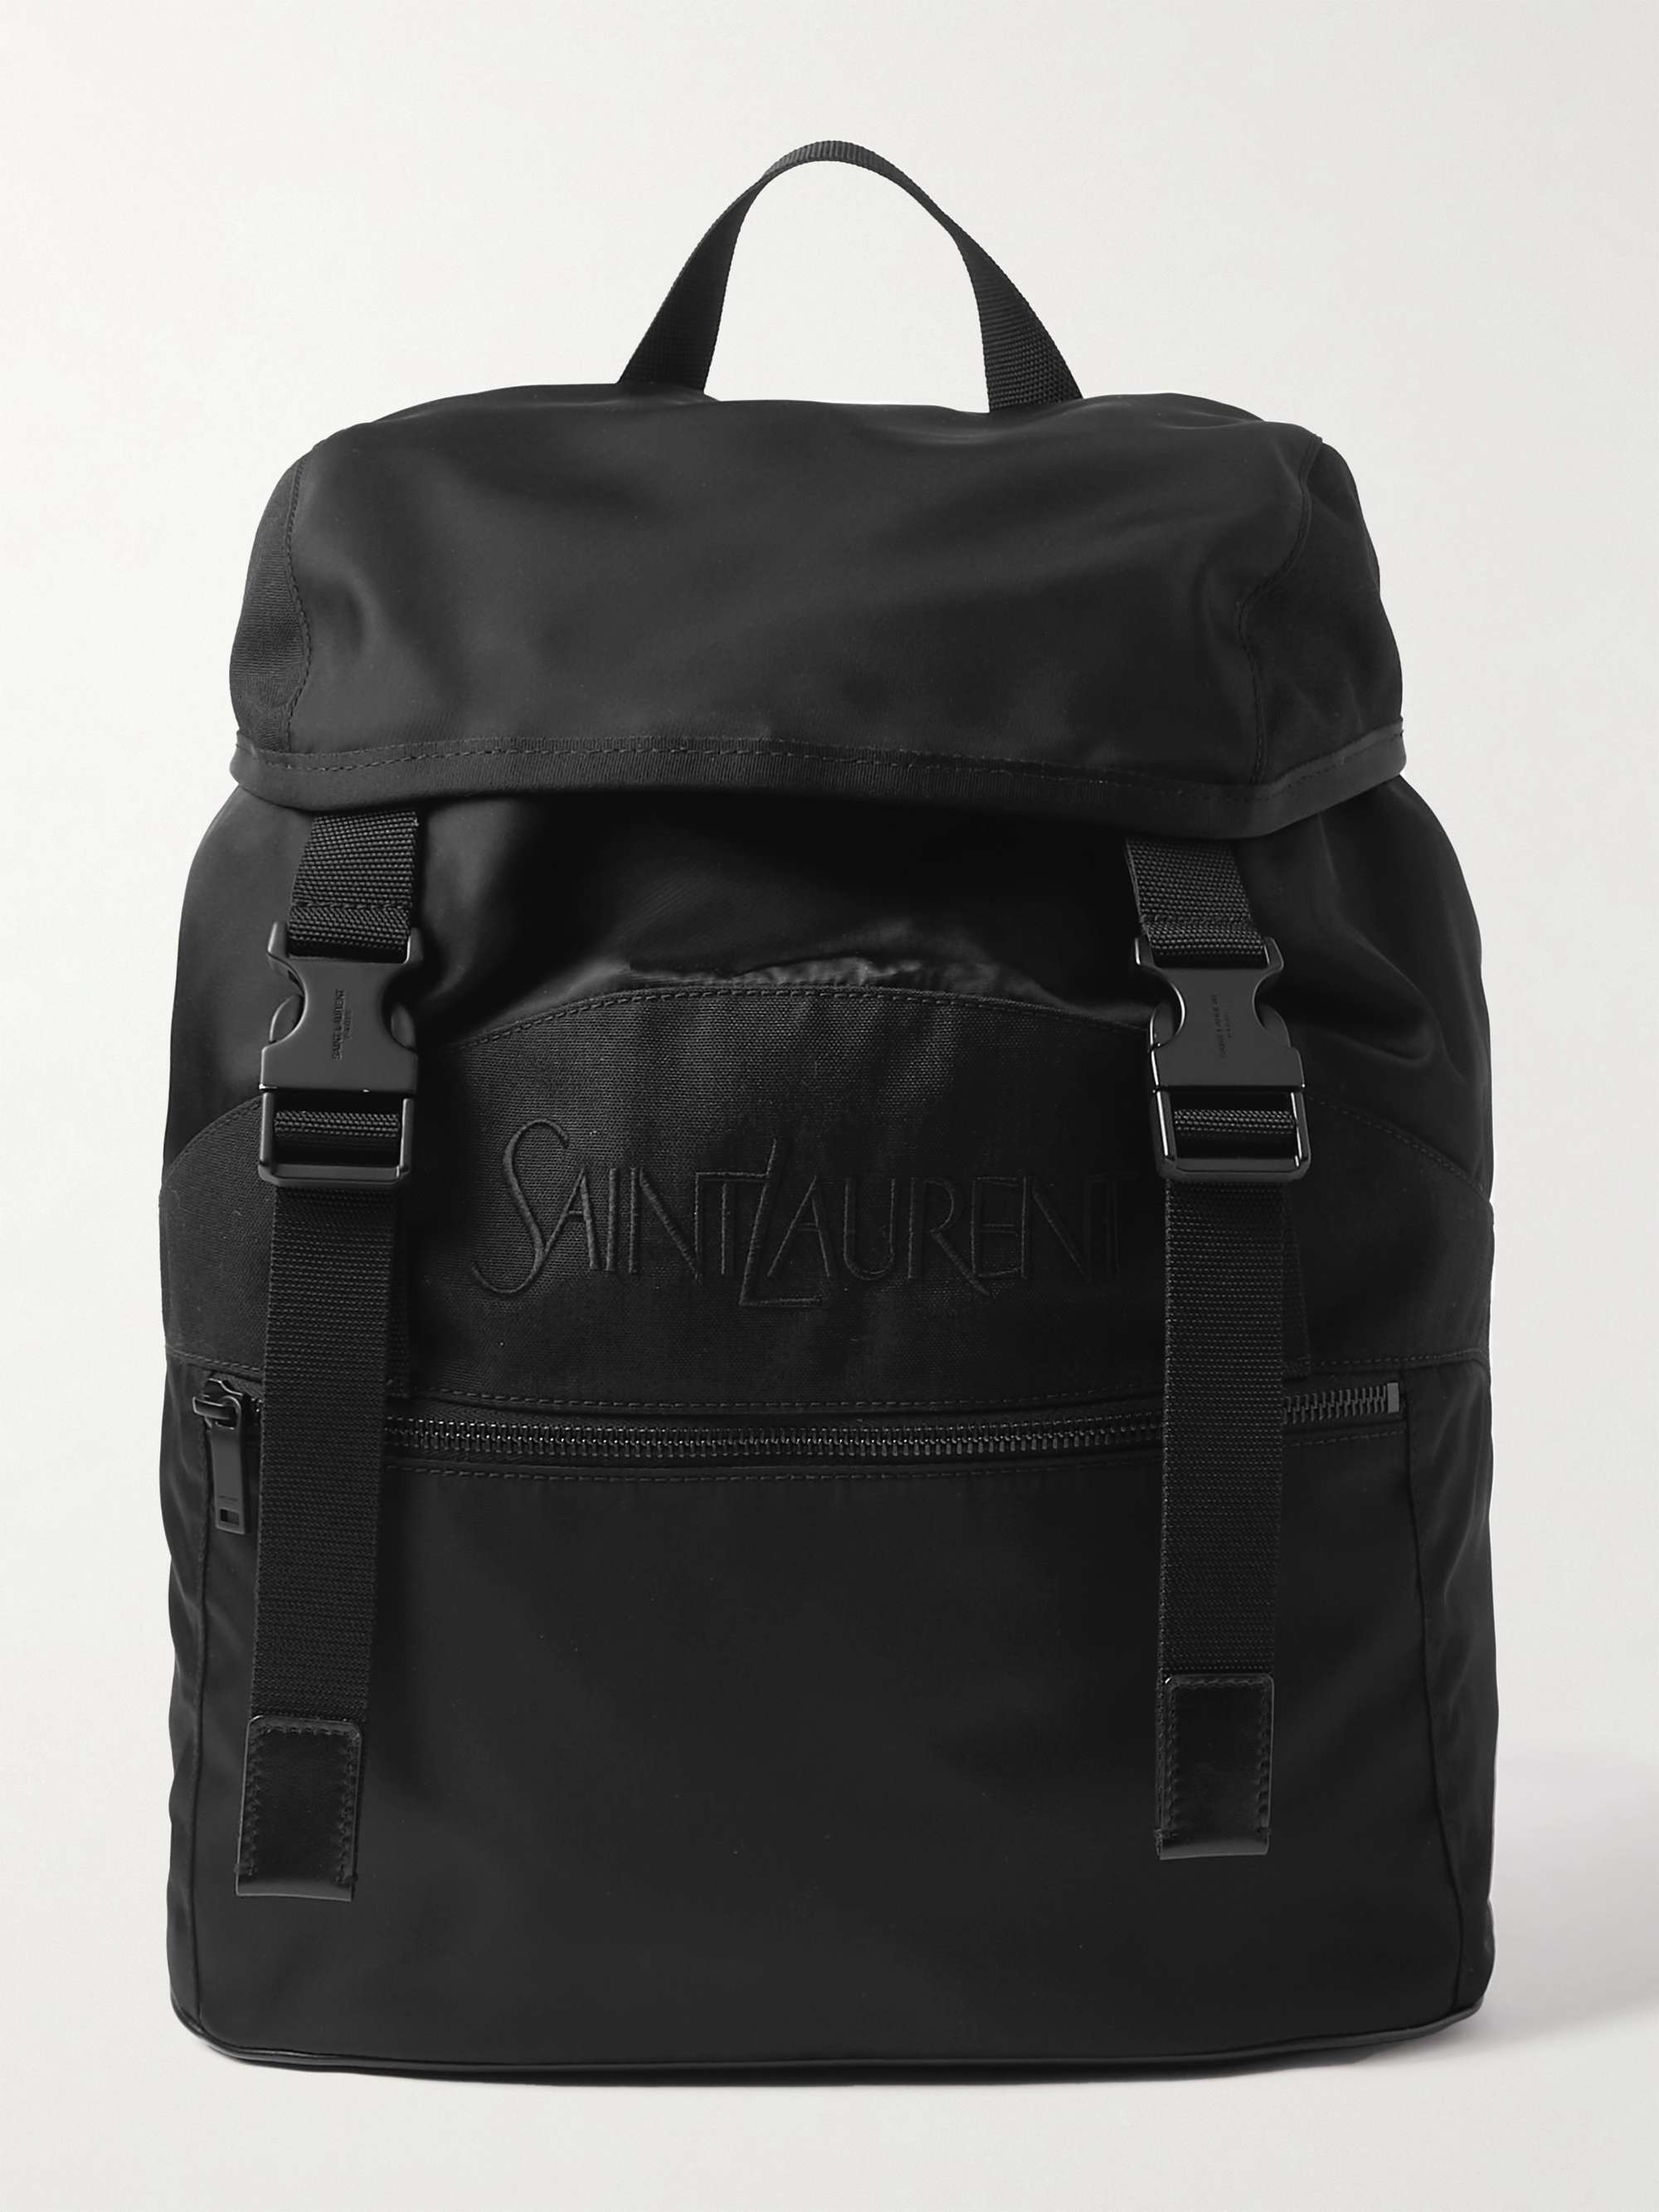 Saint Laurent - Men - logo-embroidered Leather-trimmed Shell Backpack Black